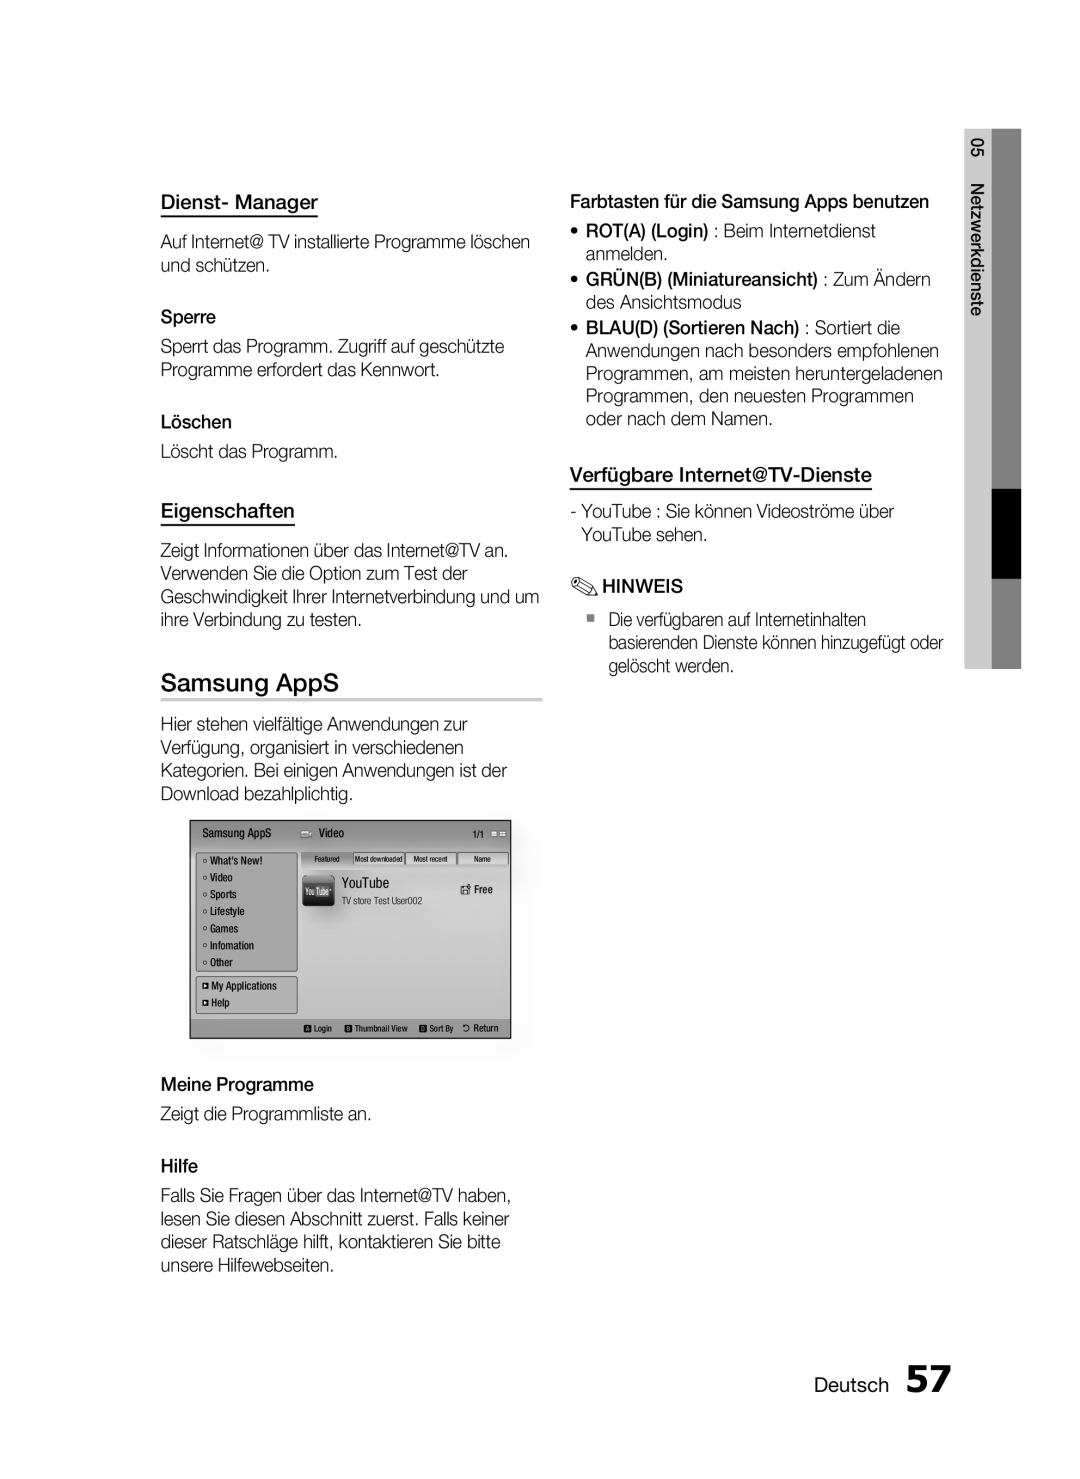 Samsung HT-C6200/XEF manual Dienst- Manager, Eigenschaften, Verfügbare Internet@TV-Dienste, Samsung AppS, Deutsch 